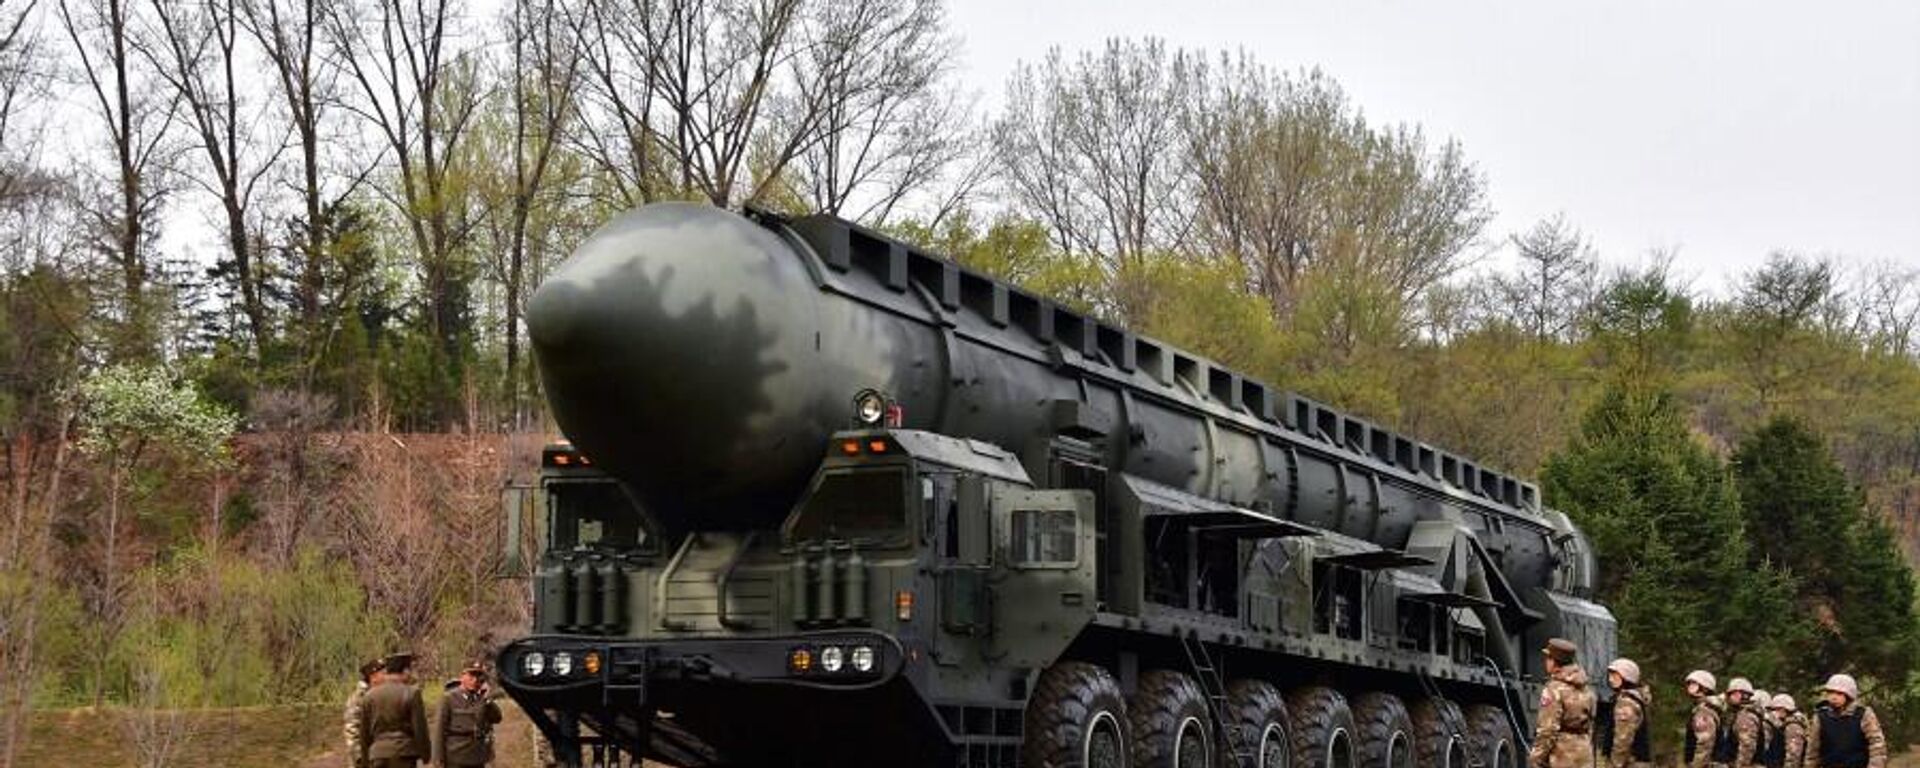  كوريا الشمالية تعلن أنها اختبرت صاروخًا بالستيًا جديدًا عابرًا للقارات يعمل بالوقود الصلب هواسونغ -18 - سبوتنيك عربي, 1920, 26.04.2023